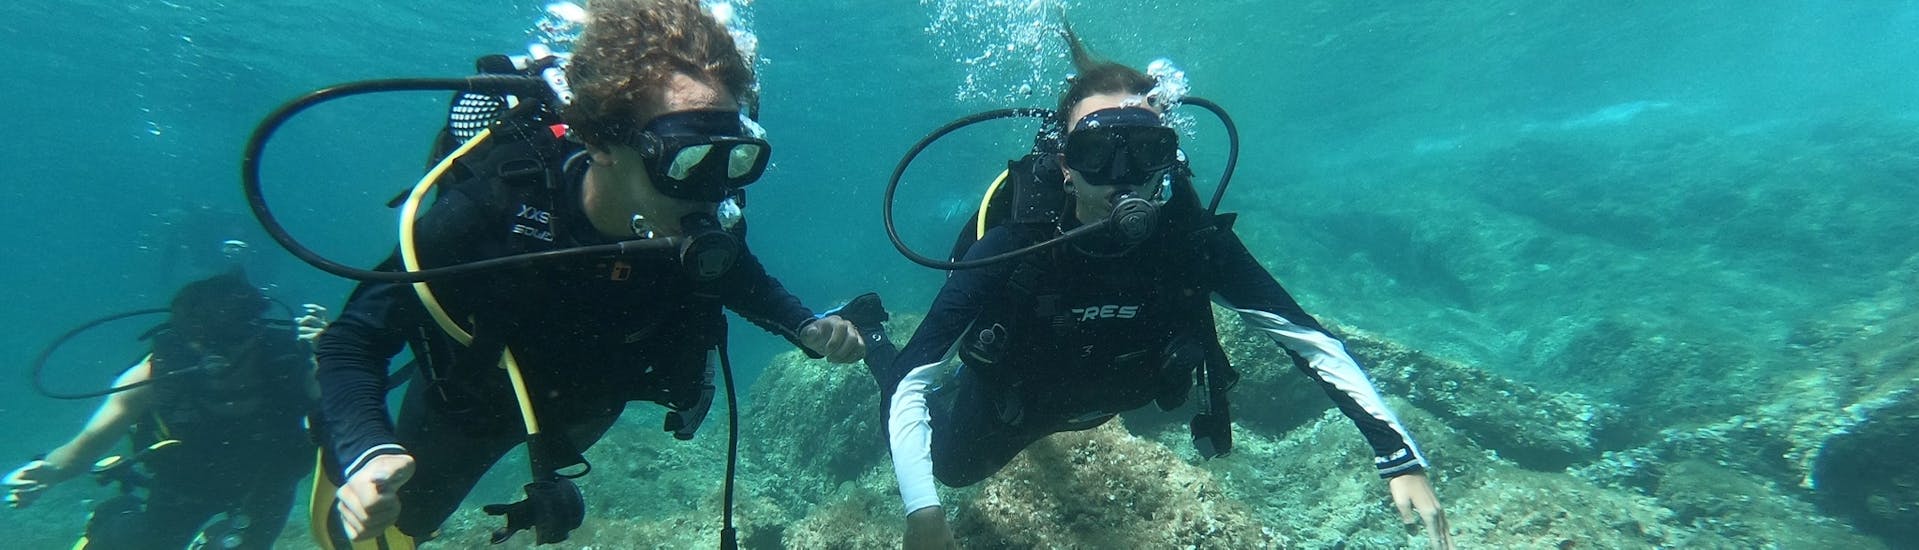 Due amiche si immergono nelle acque blu di Maiorca durante un corso di immersione PADI Discover con Albatros Diving a Cala Bona.